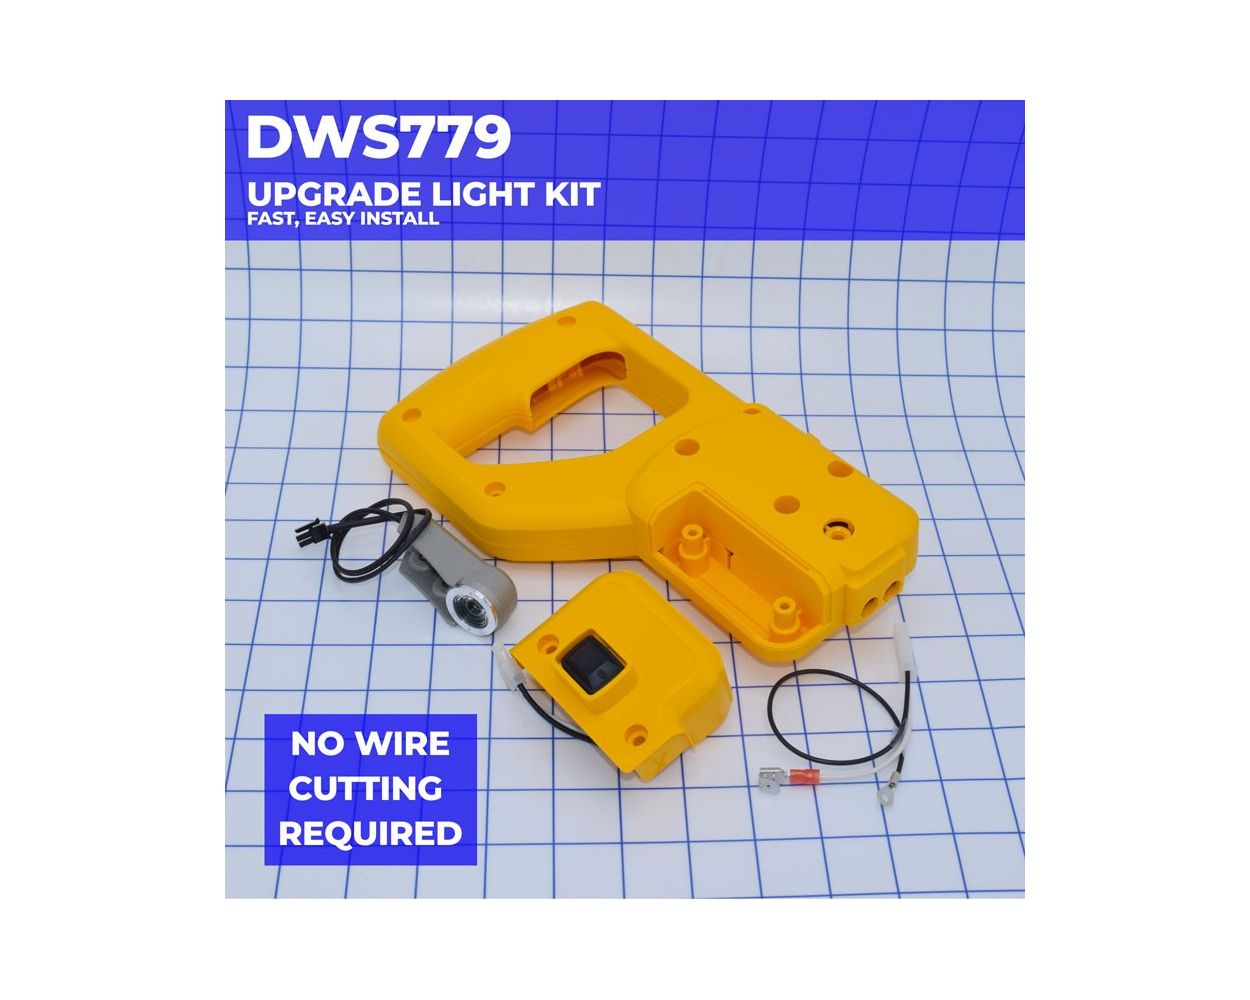 DWS779 XPS LED Light Upgrade Kit - Dewalt®